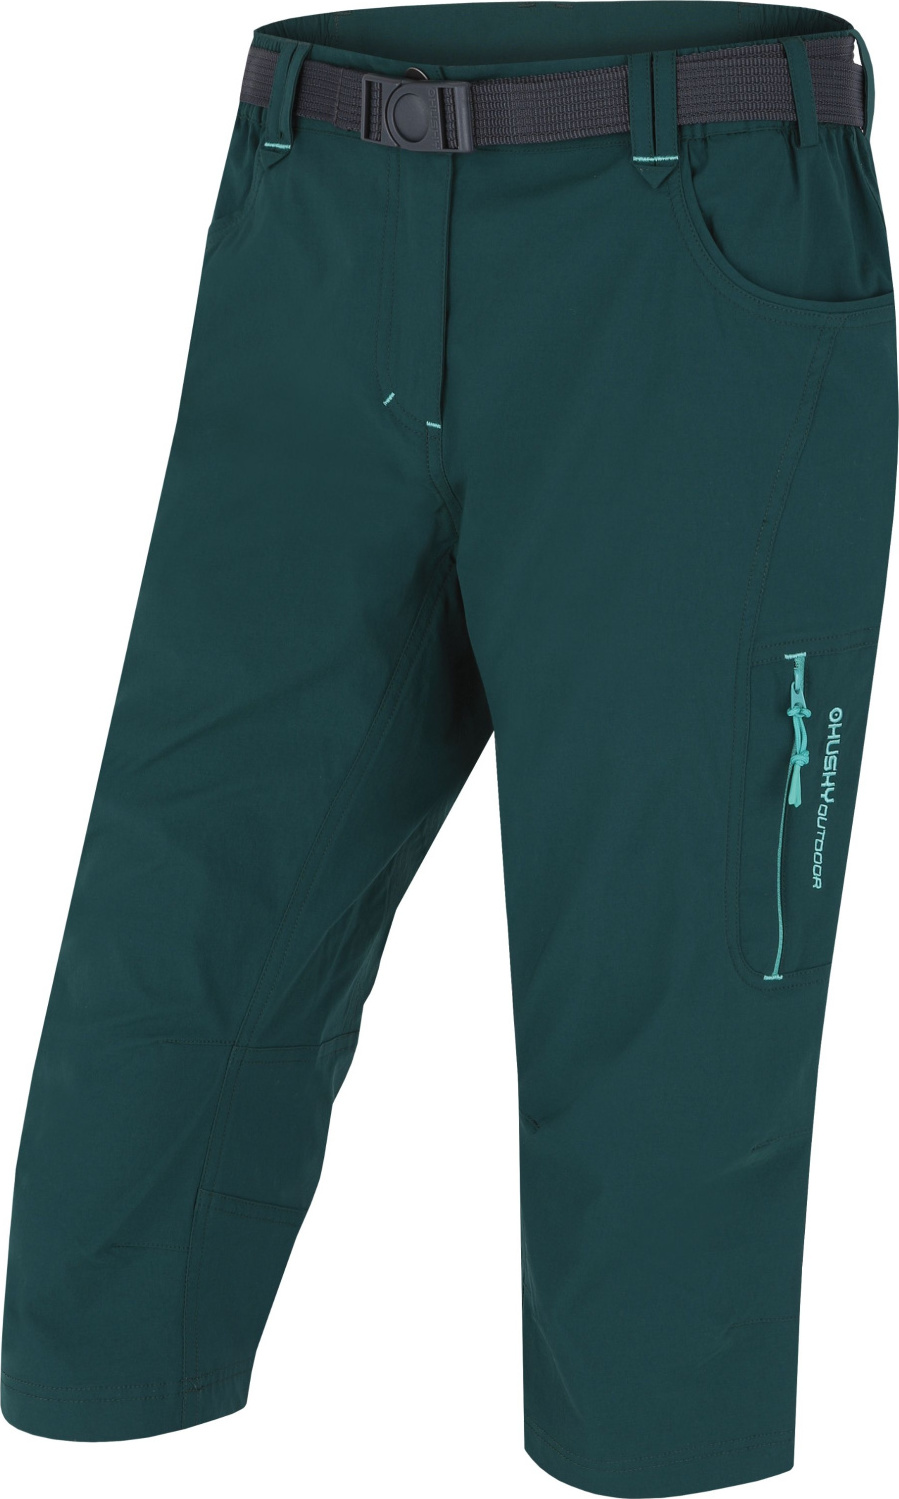 Dámské 3/4 kalhoty HUSKY Klery zelené Velikost: XS